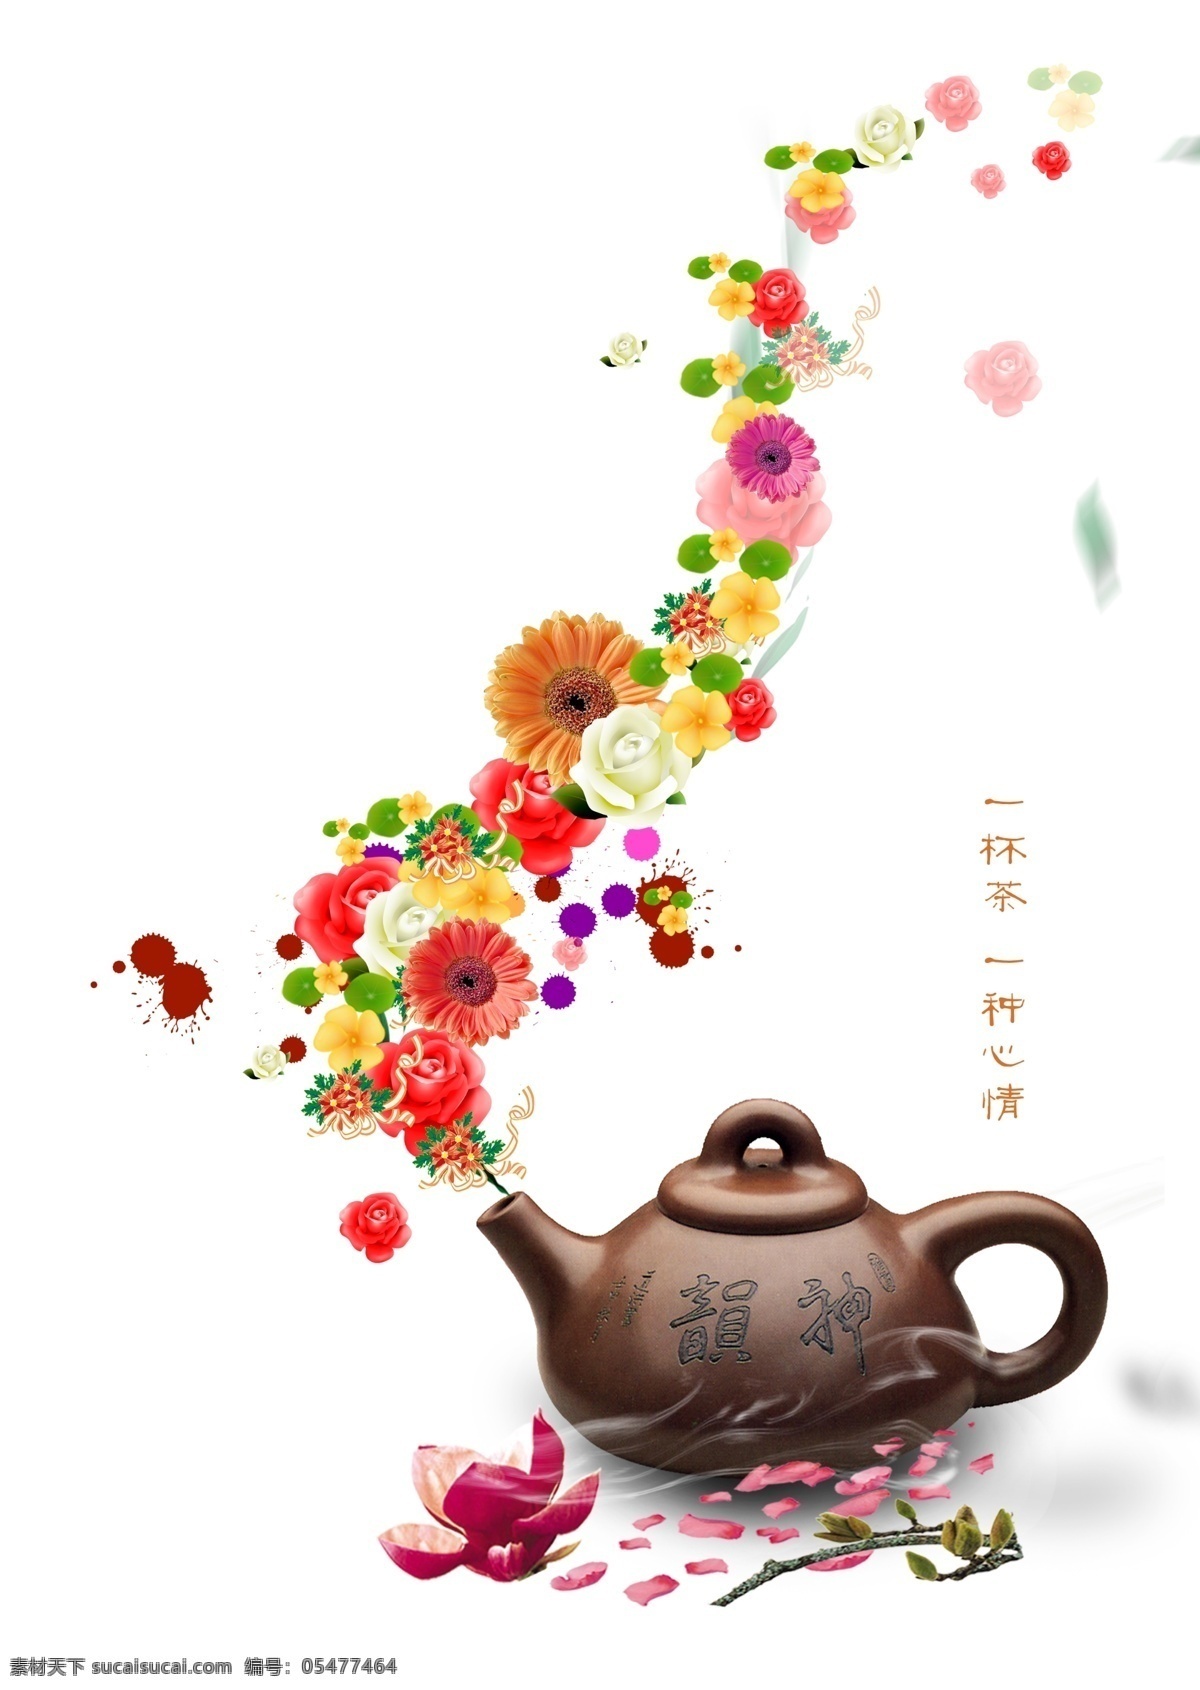 花茶海报 花茶 茶壶 花朵 菊花茶 女性茶海报 食品海报